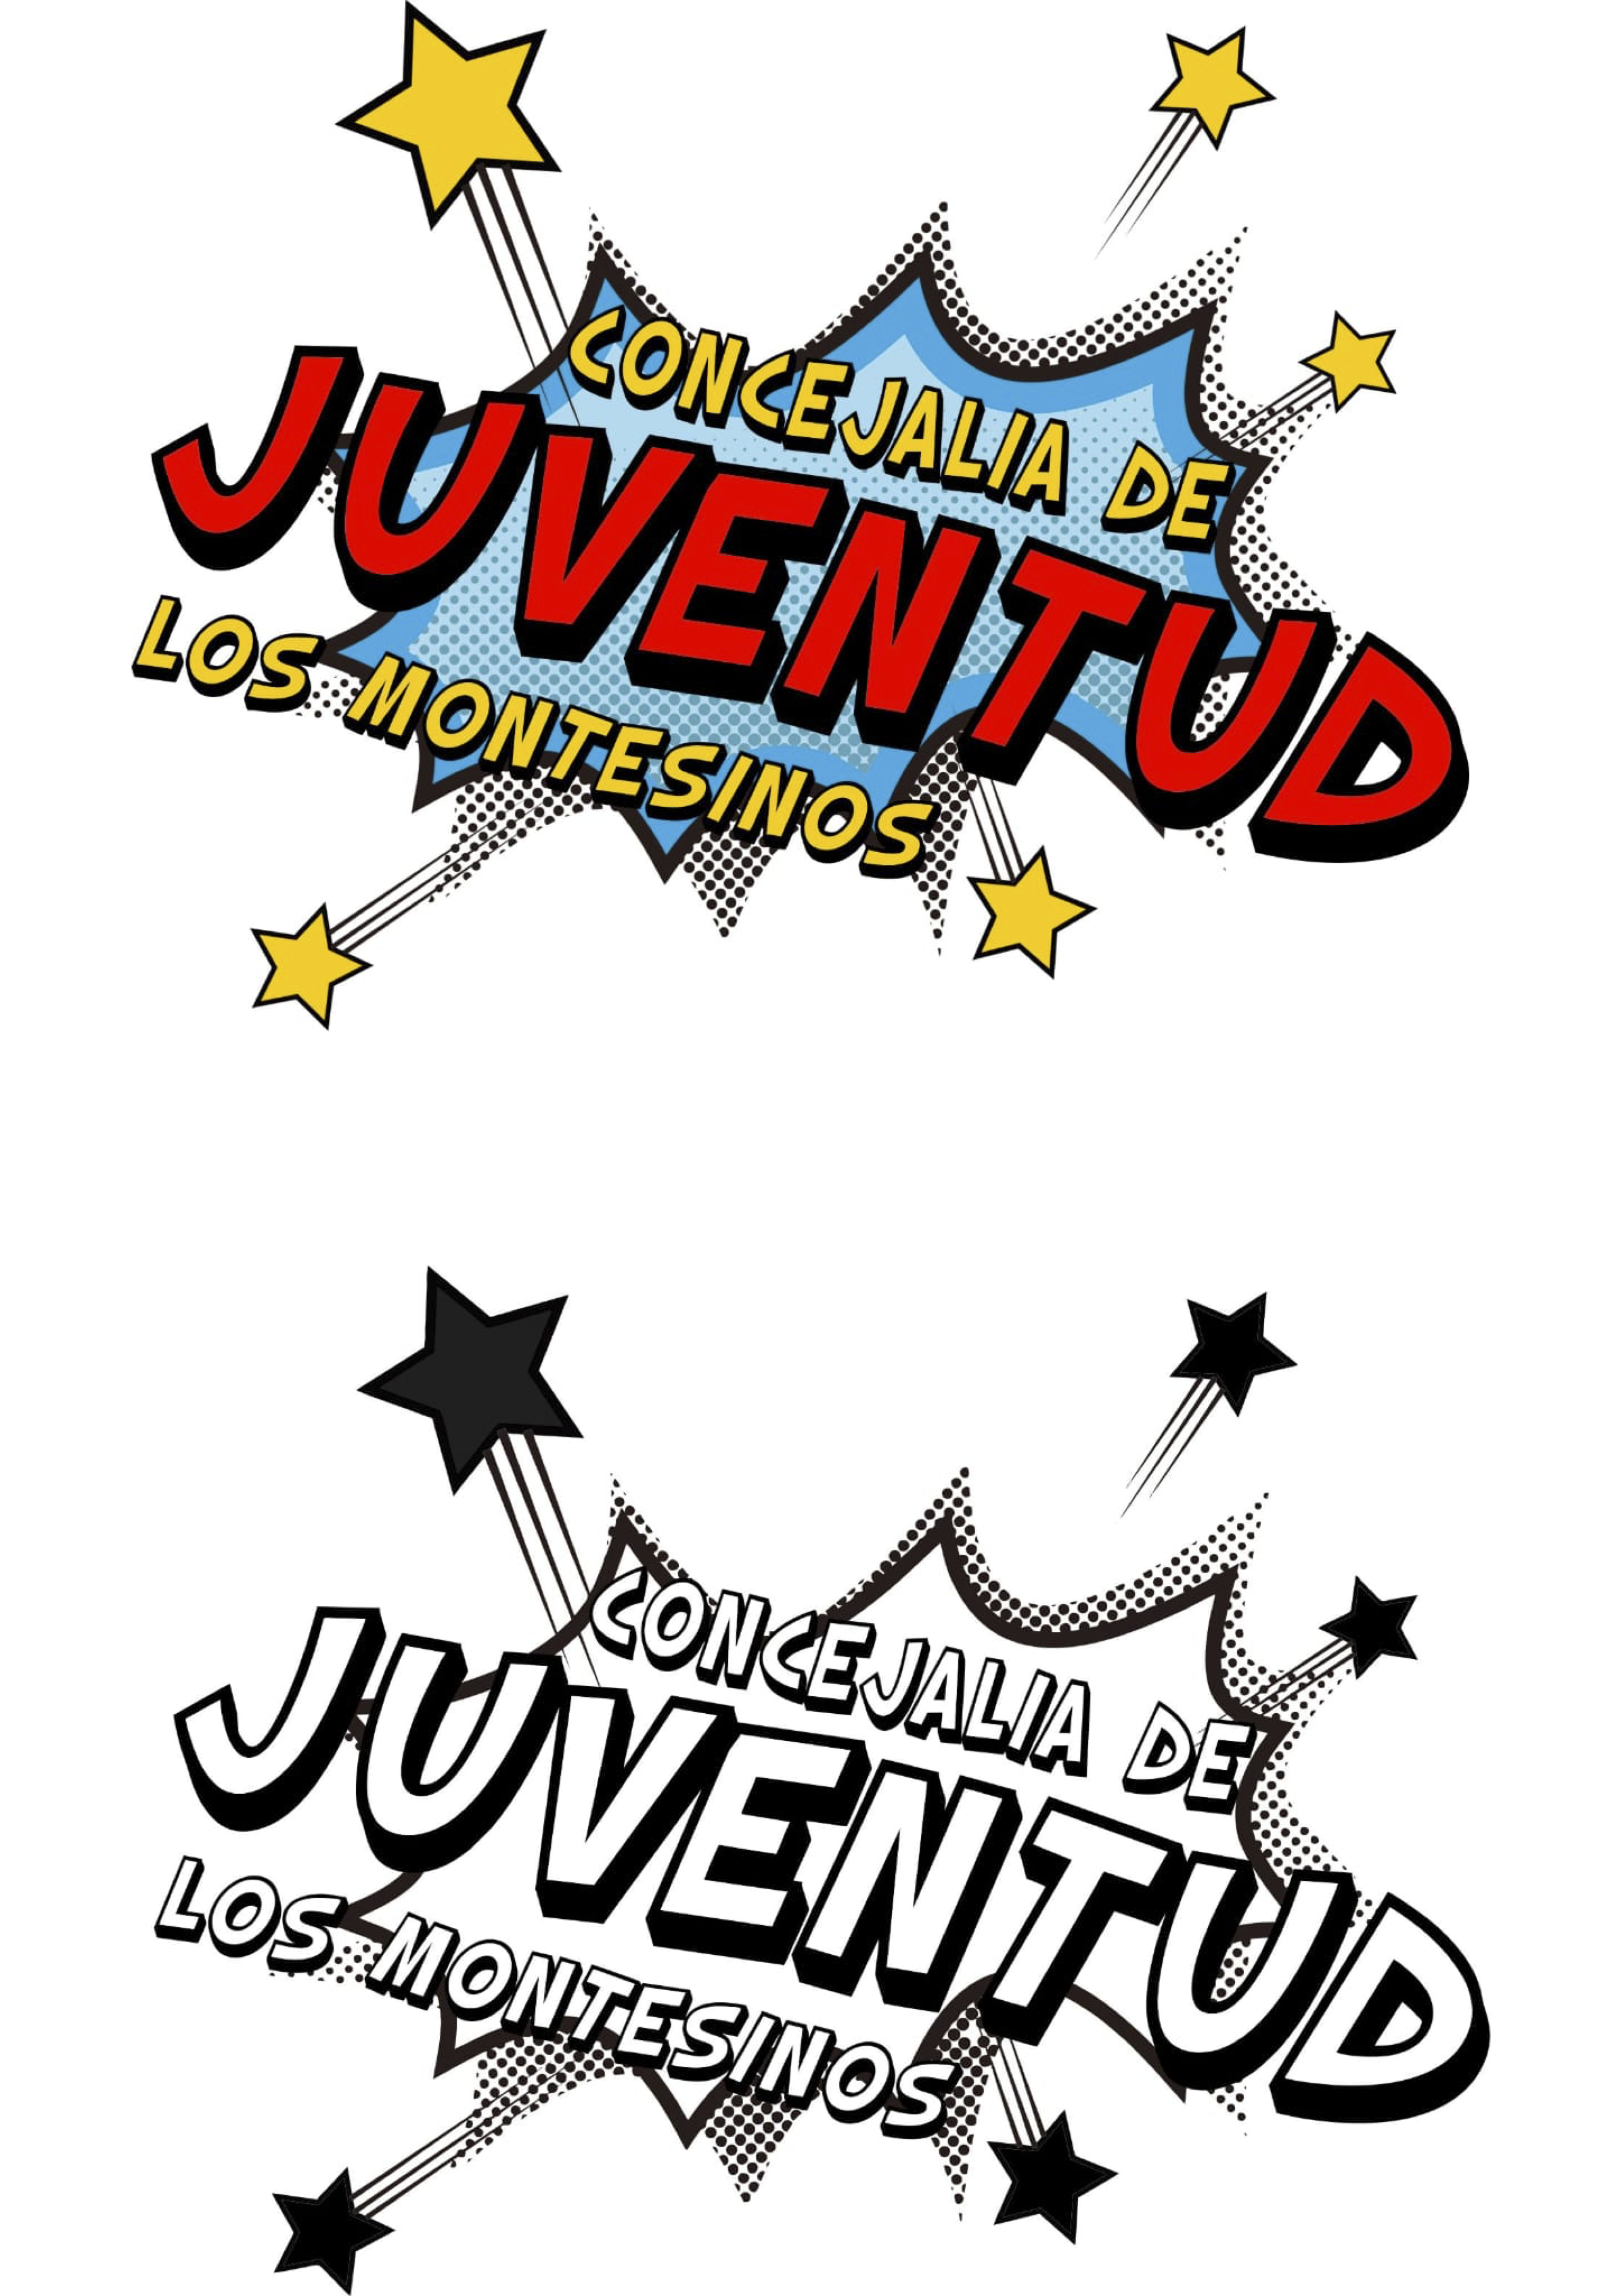 Nou logo de la Regidoria de Joventut. Los Montesinos